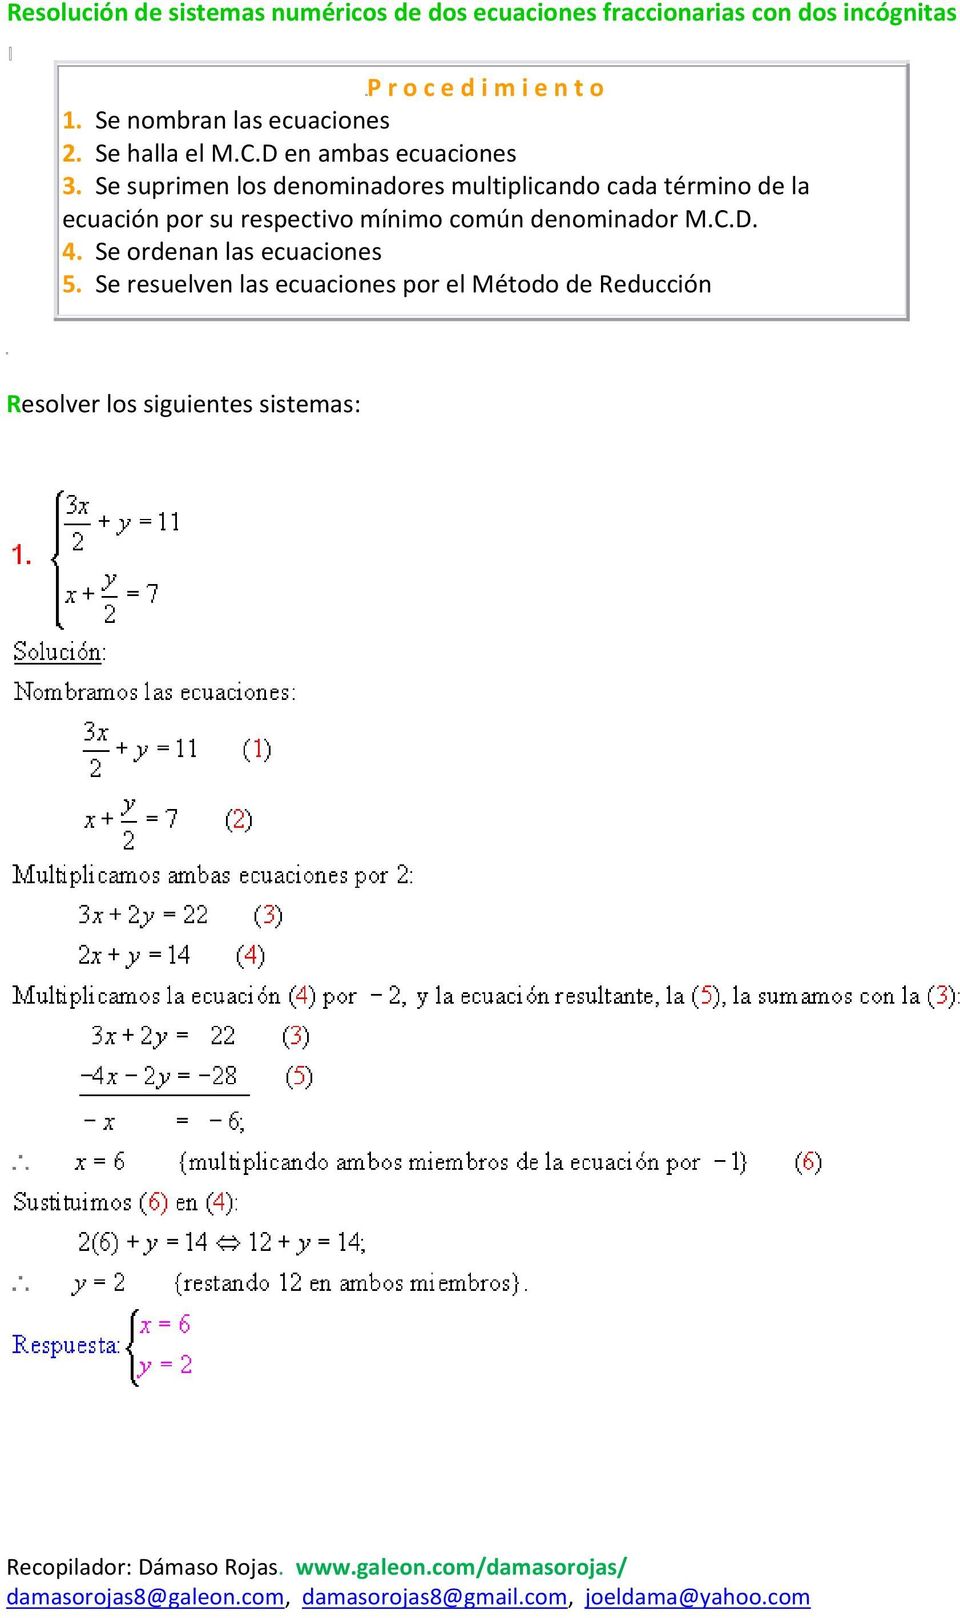 Se suprimen los denominadores multiplicando cada término de la ecuación por su respectivo mínimo común denominador M.C.